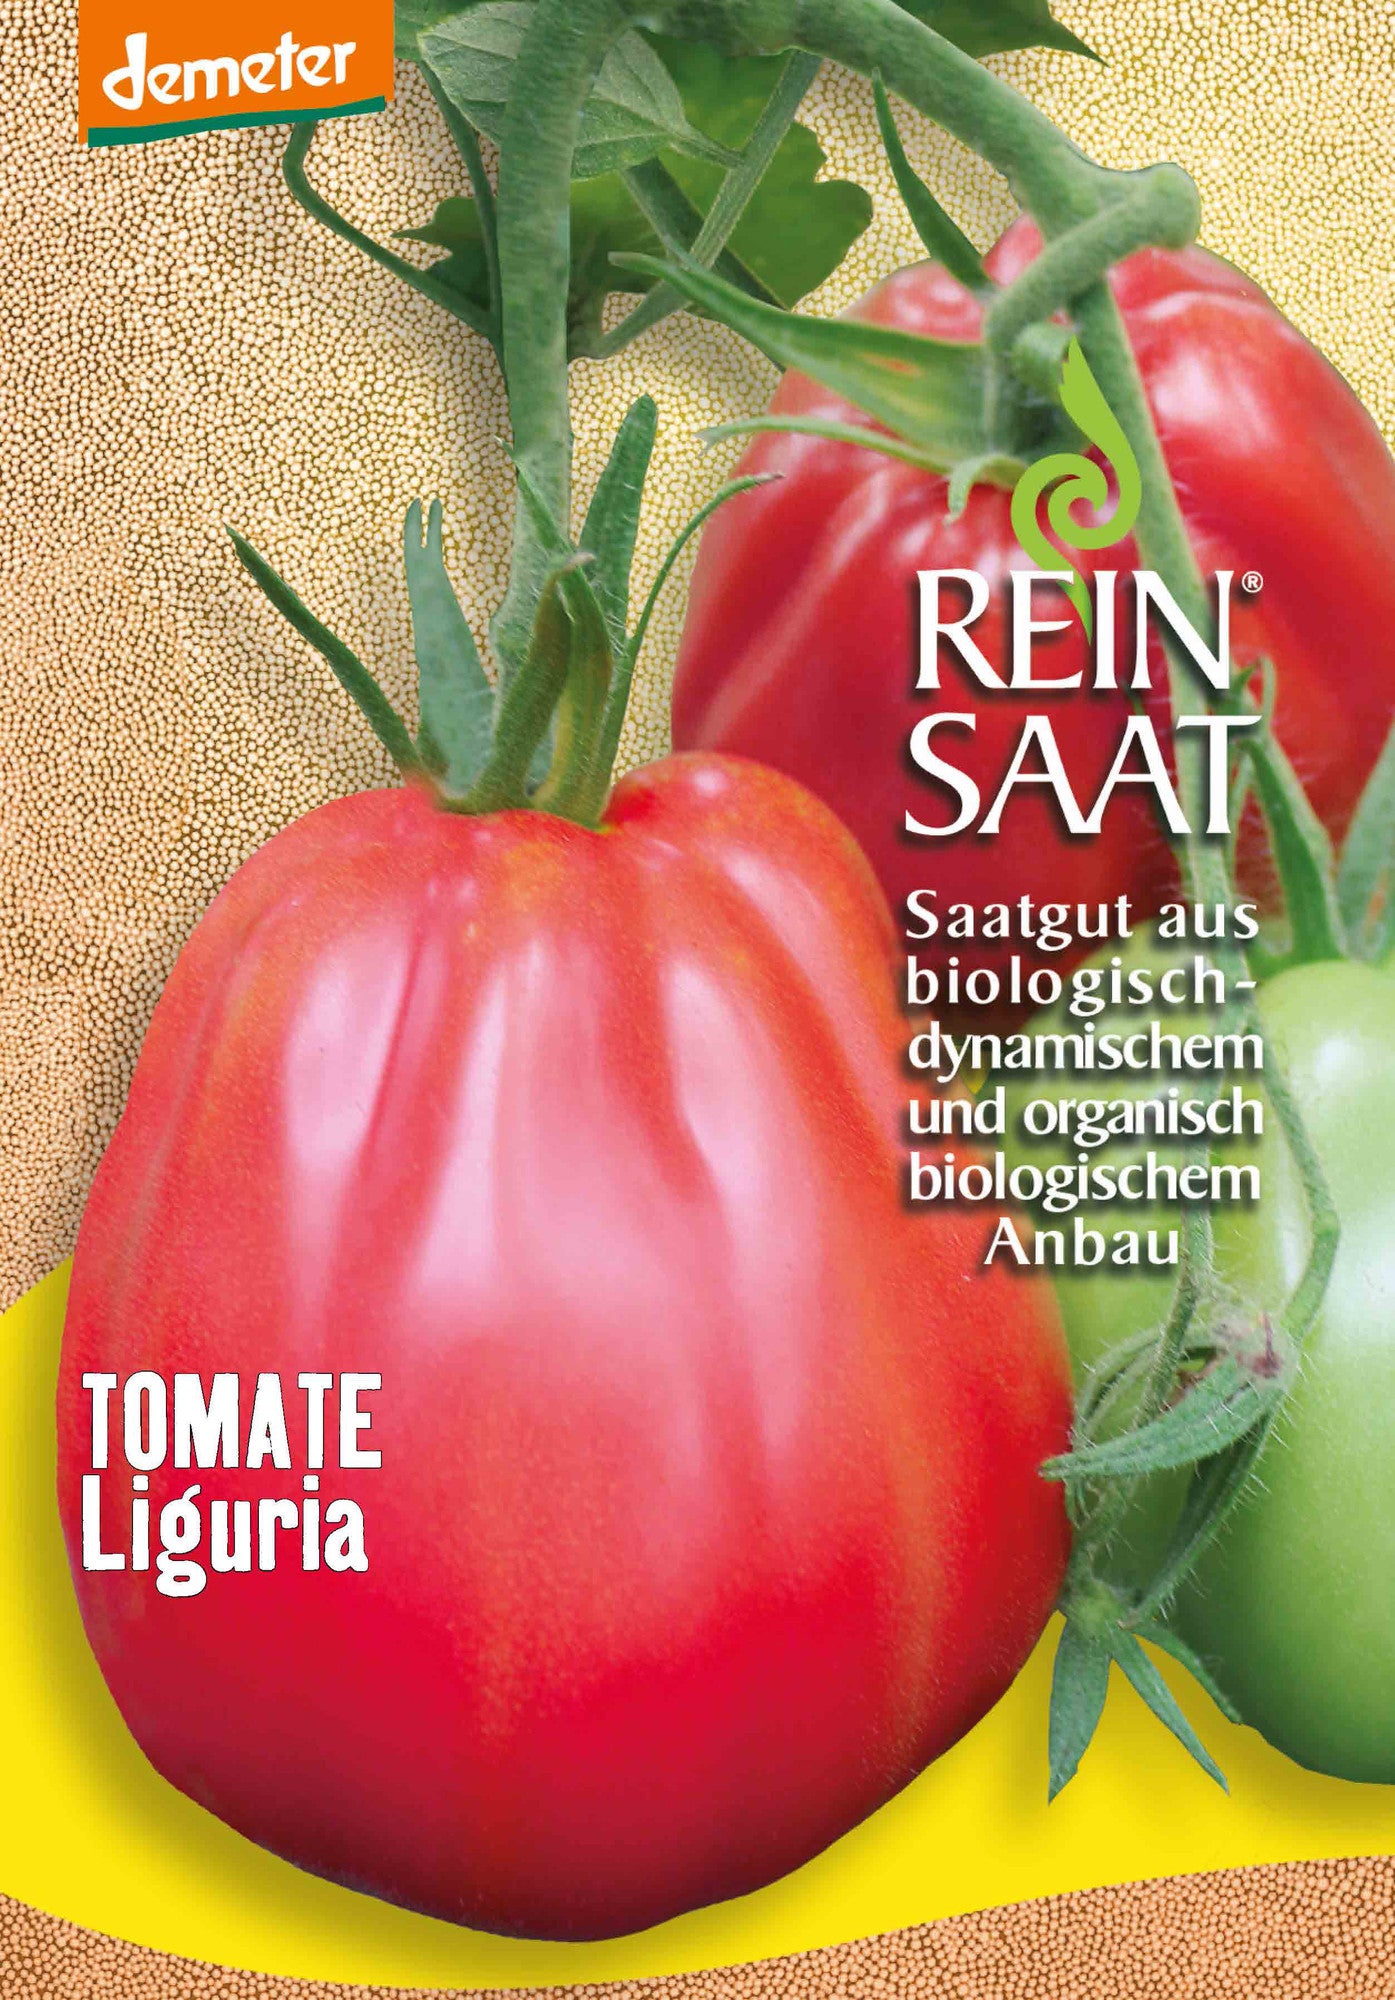 Tomate Liguria | BIO Fleischtomatensamen von Reinsaat